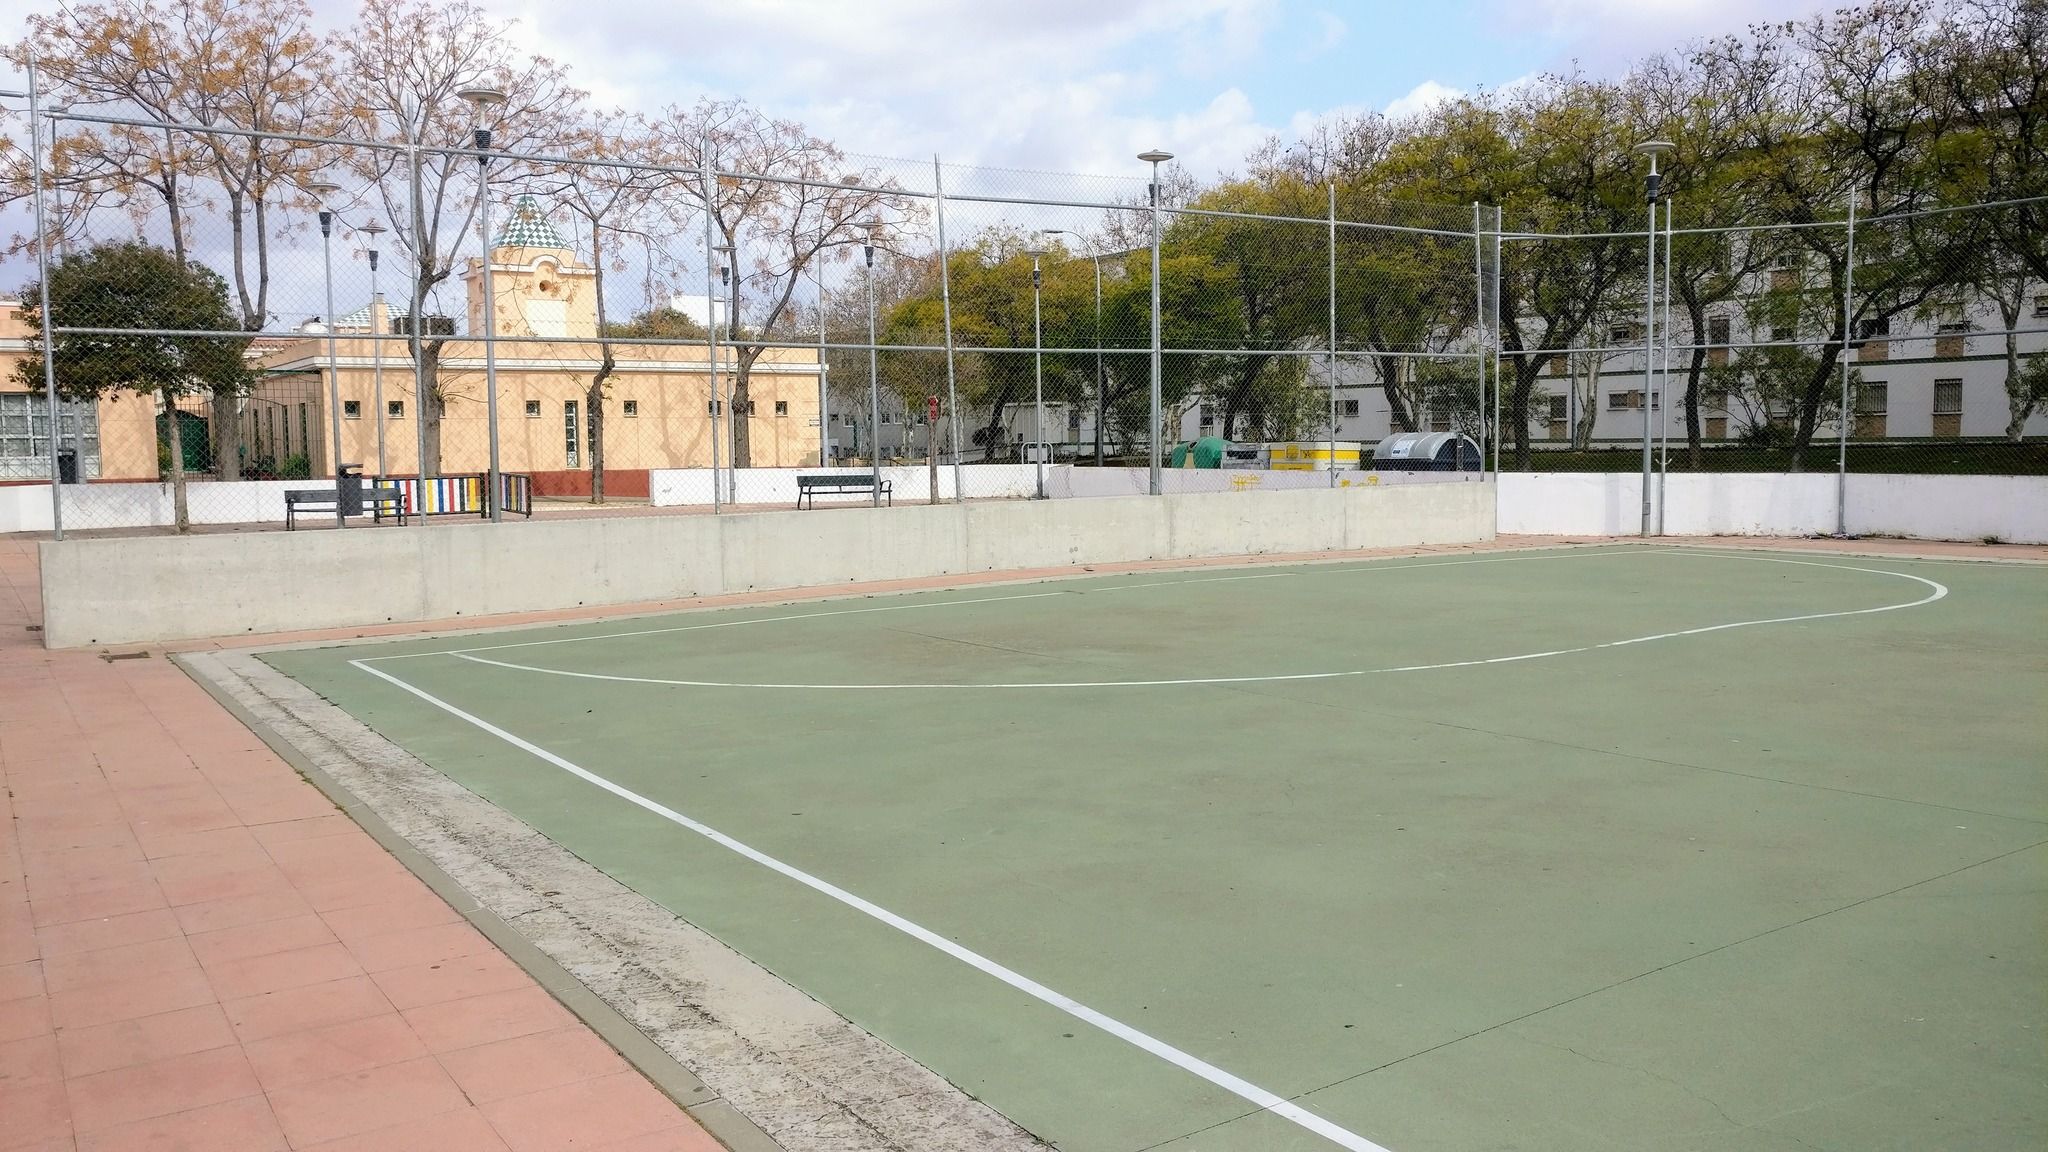 Campo de fútbol sala sin porterías en la barriada de Los Frailes en El Puerto.